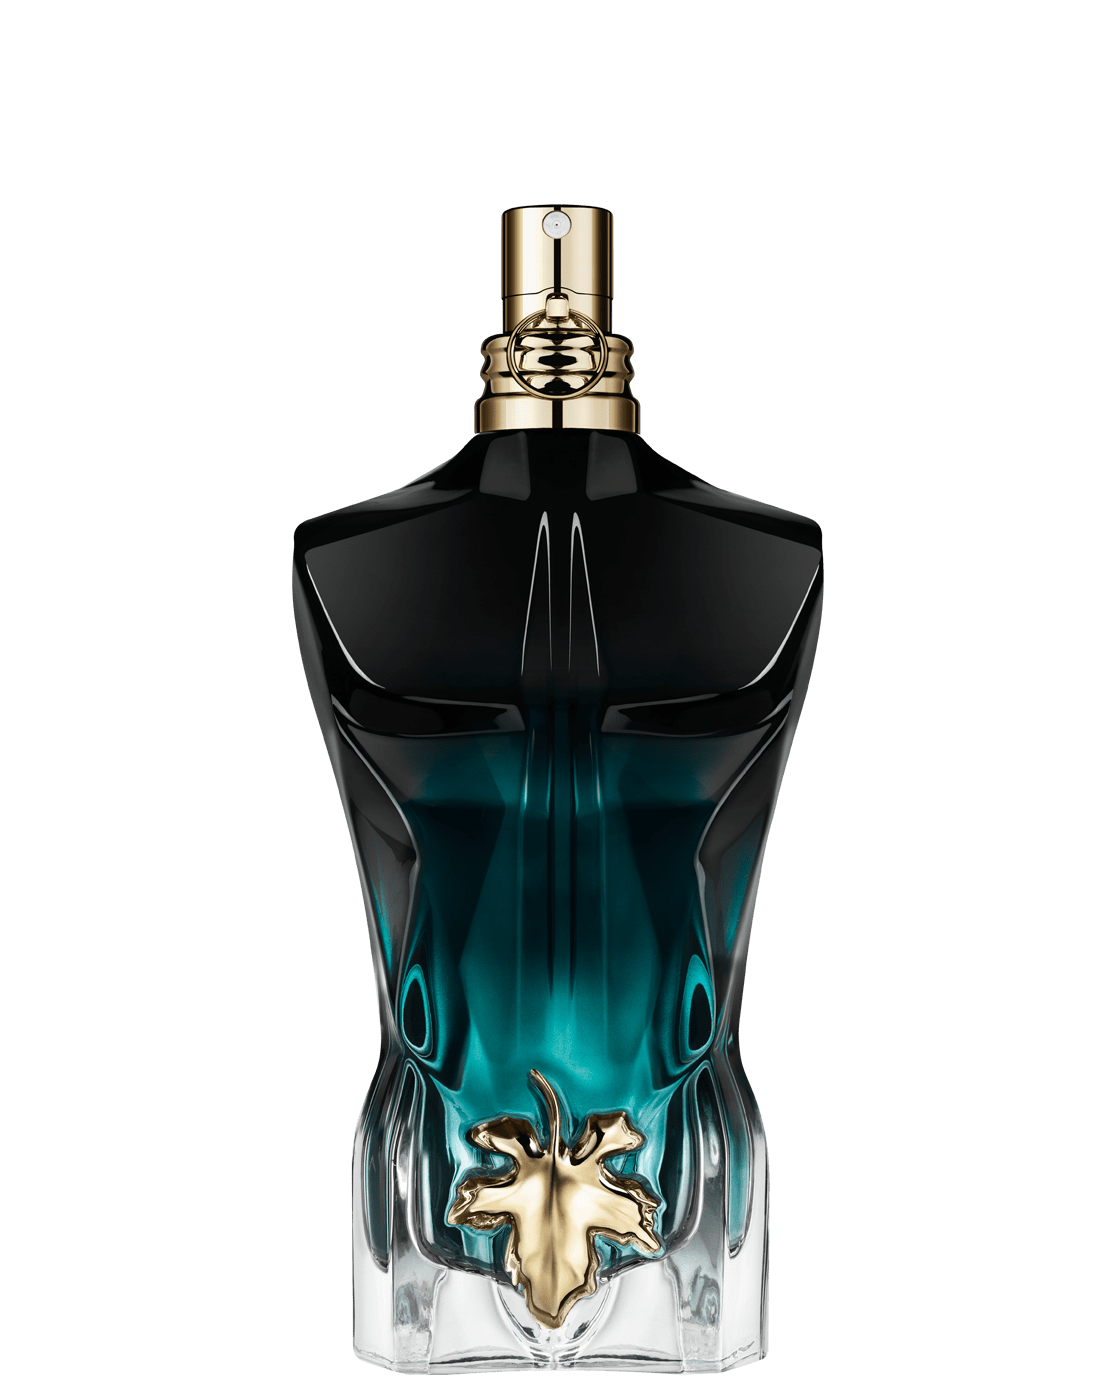 Buy Jean Paul Gaultier Le Beau Man Eau de Parfum Intense 75ml · USA